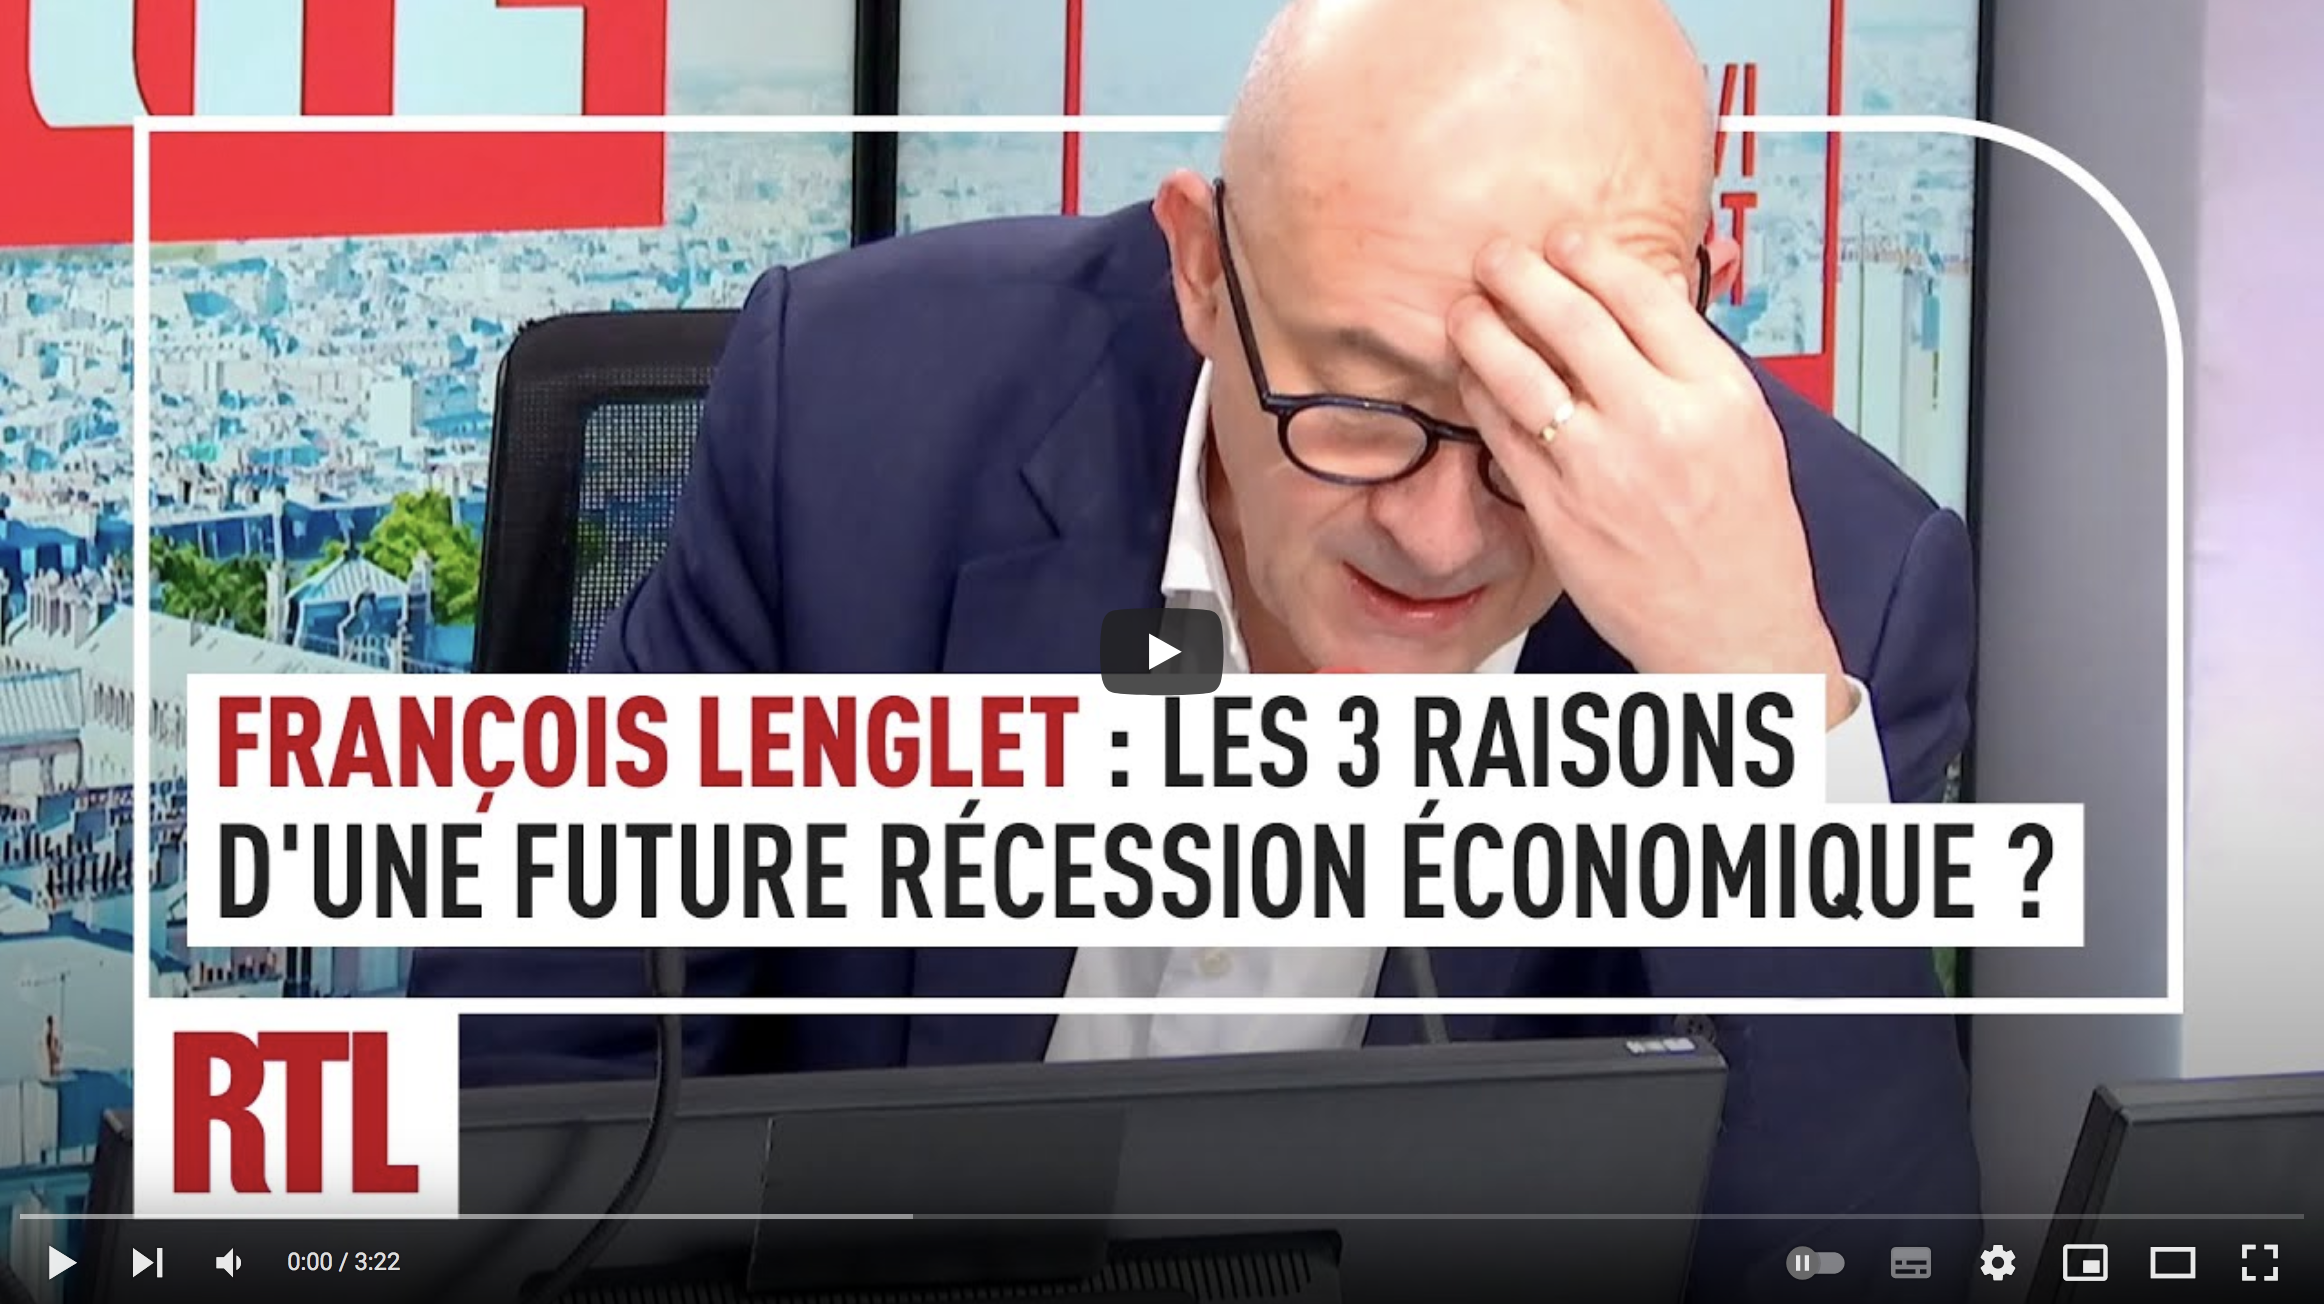 François Lenglet : les 3 raisons d’une future récession économique (VIDÉO)